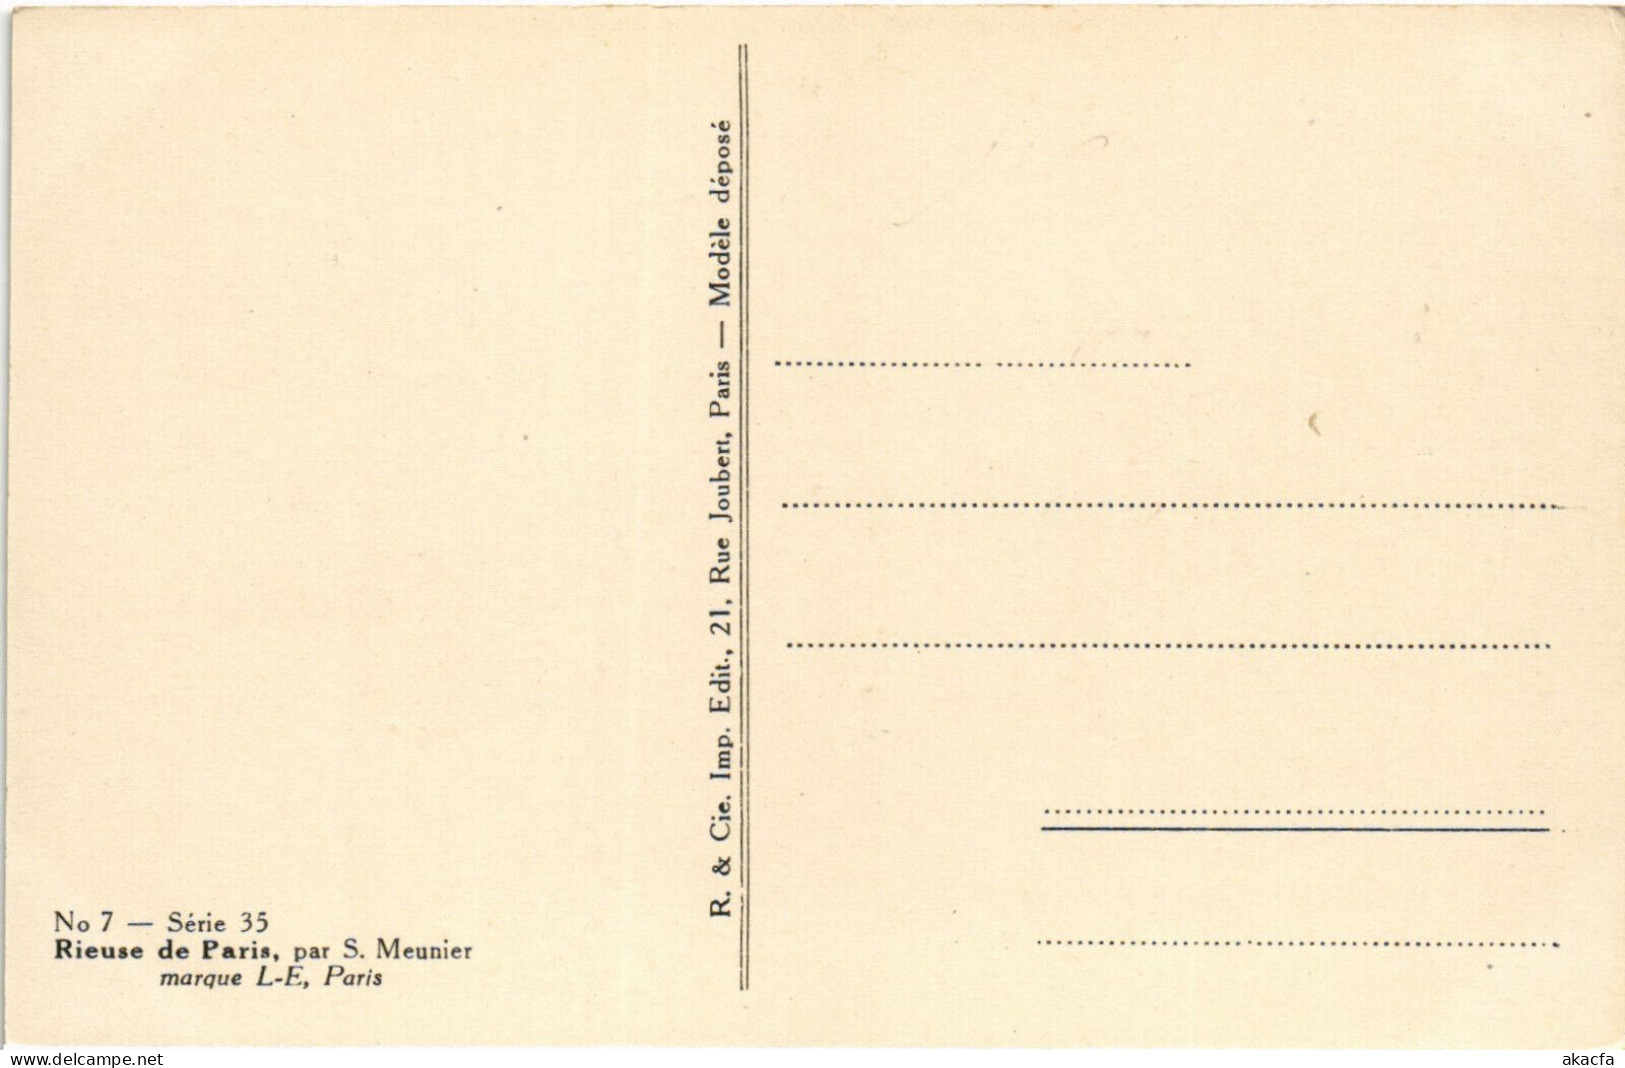 PC ARTIST SIGNED, S. MEUNIER, RIEUSE DE PARIS, Vintage Postcard (b51231) - Meunier, S.